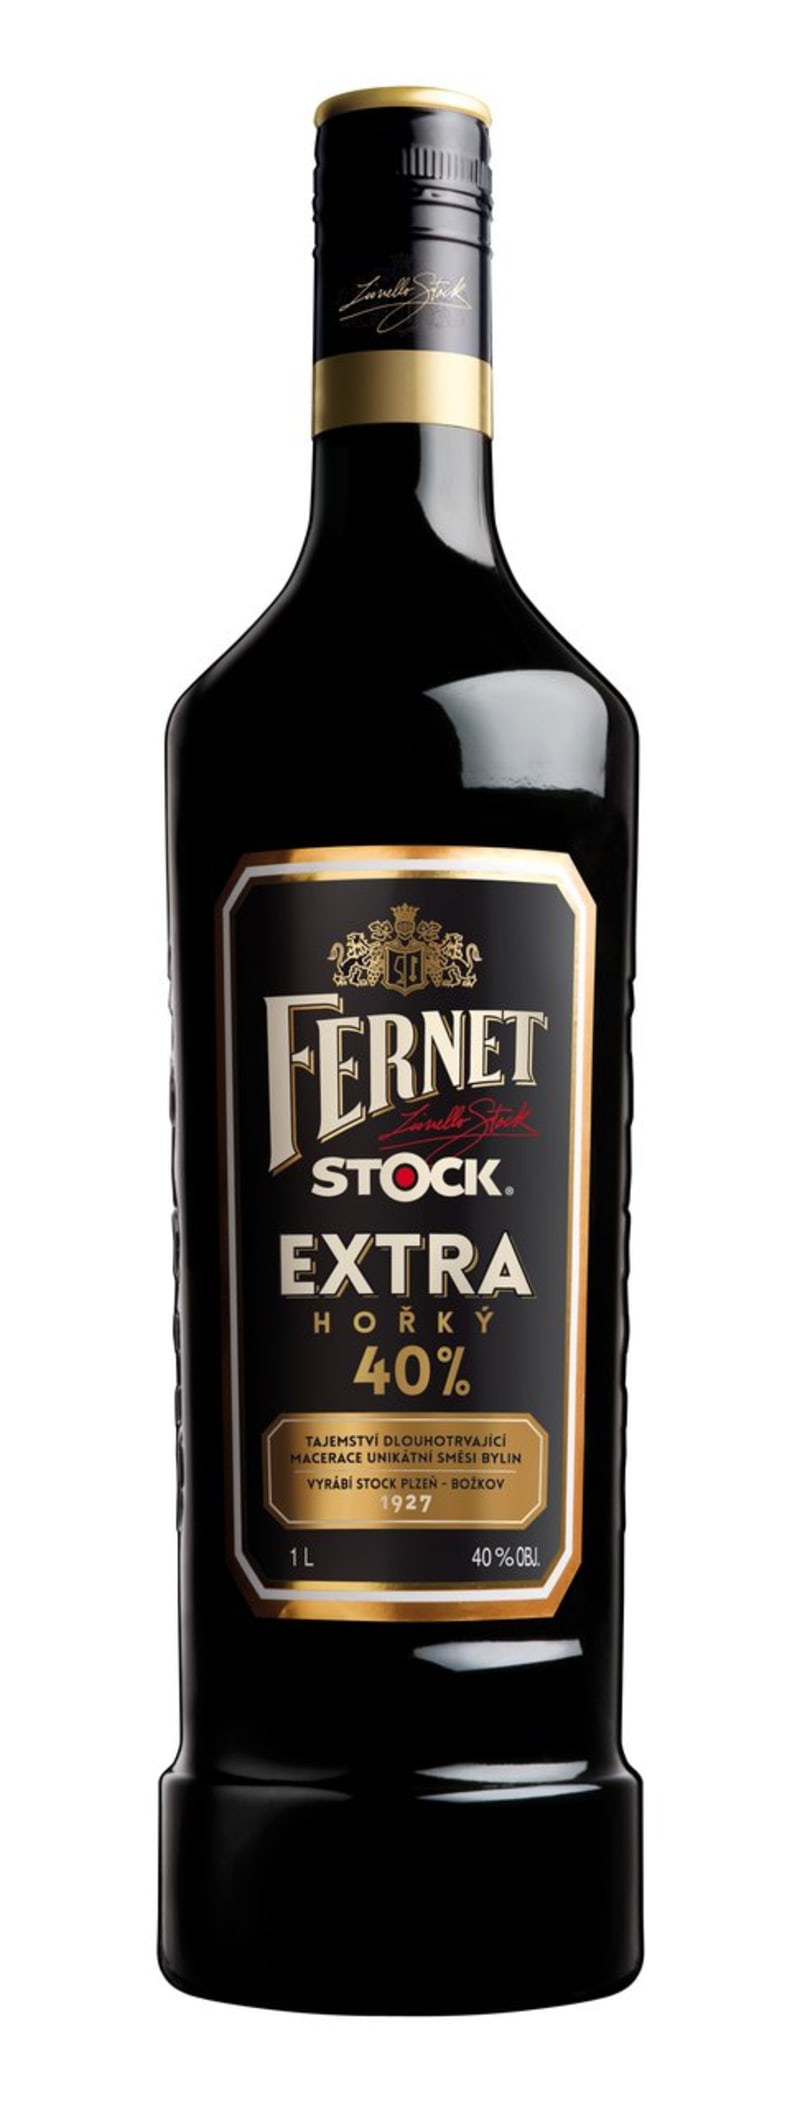 Fernet Stock Extra hořký, 429 Kč